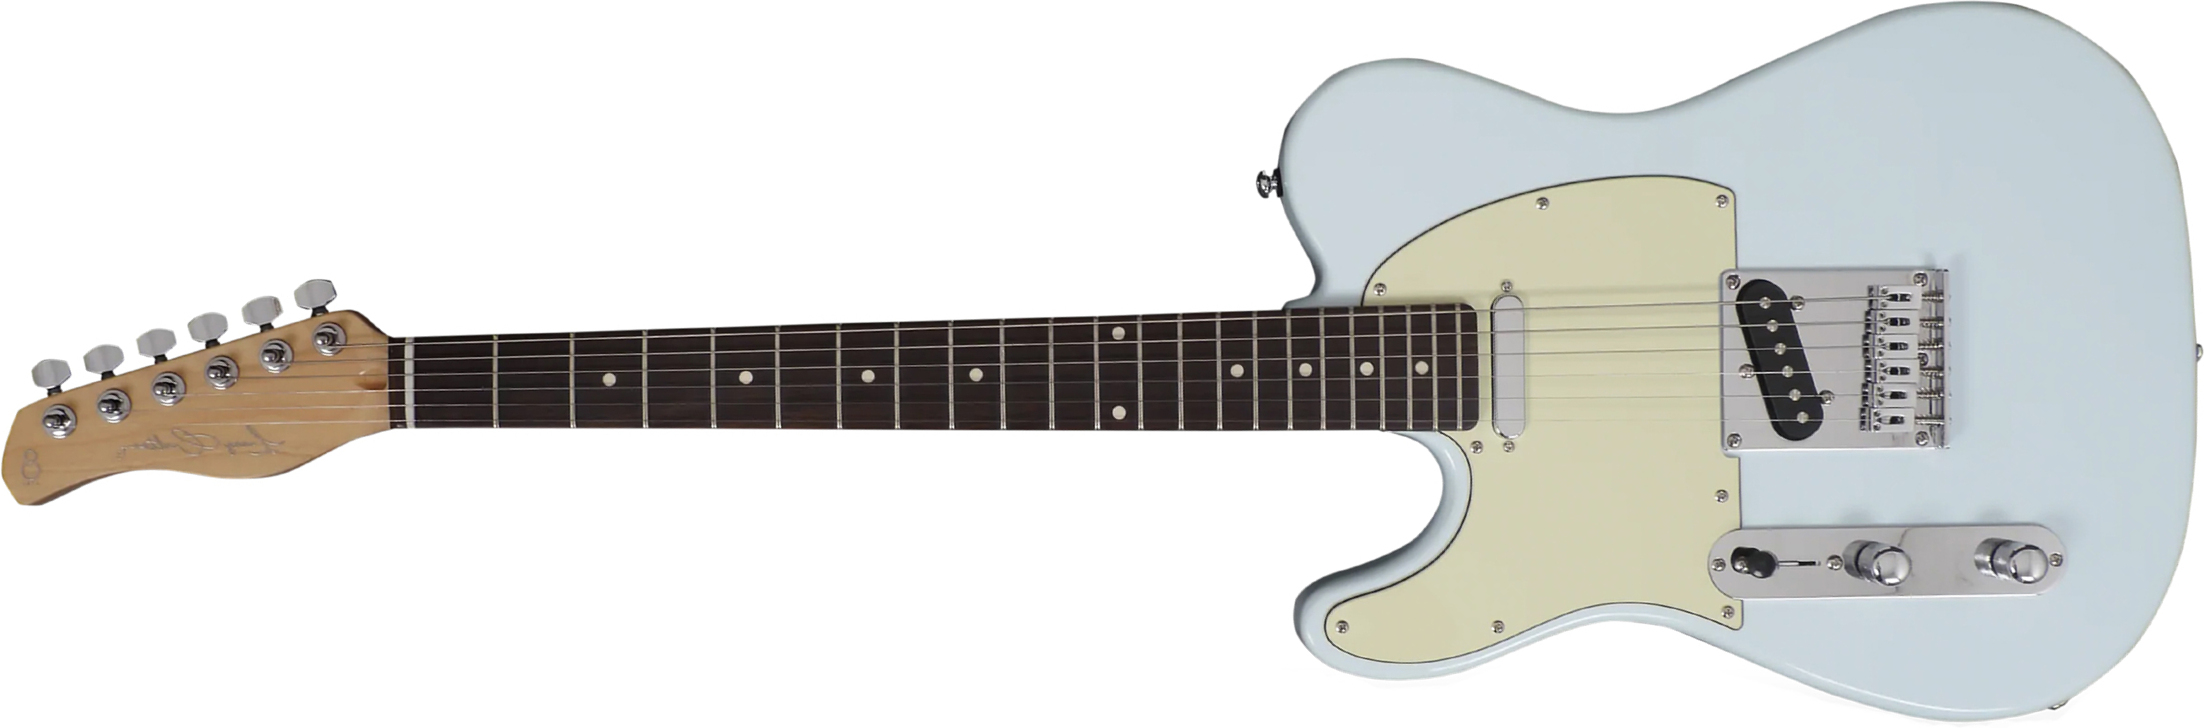 Sire Larry Carlton T3 Lh Signature Gaucher 2s Ht Rw - Sonic Blue - Linkshandige elektrische gitaar - Main picture